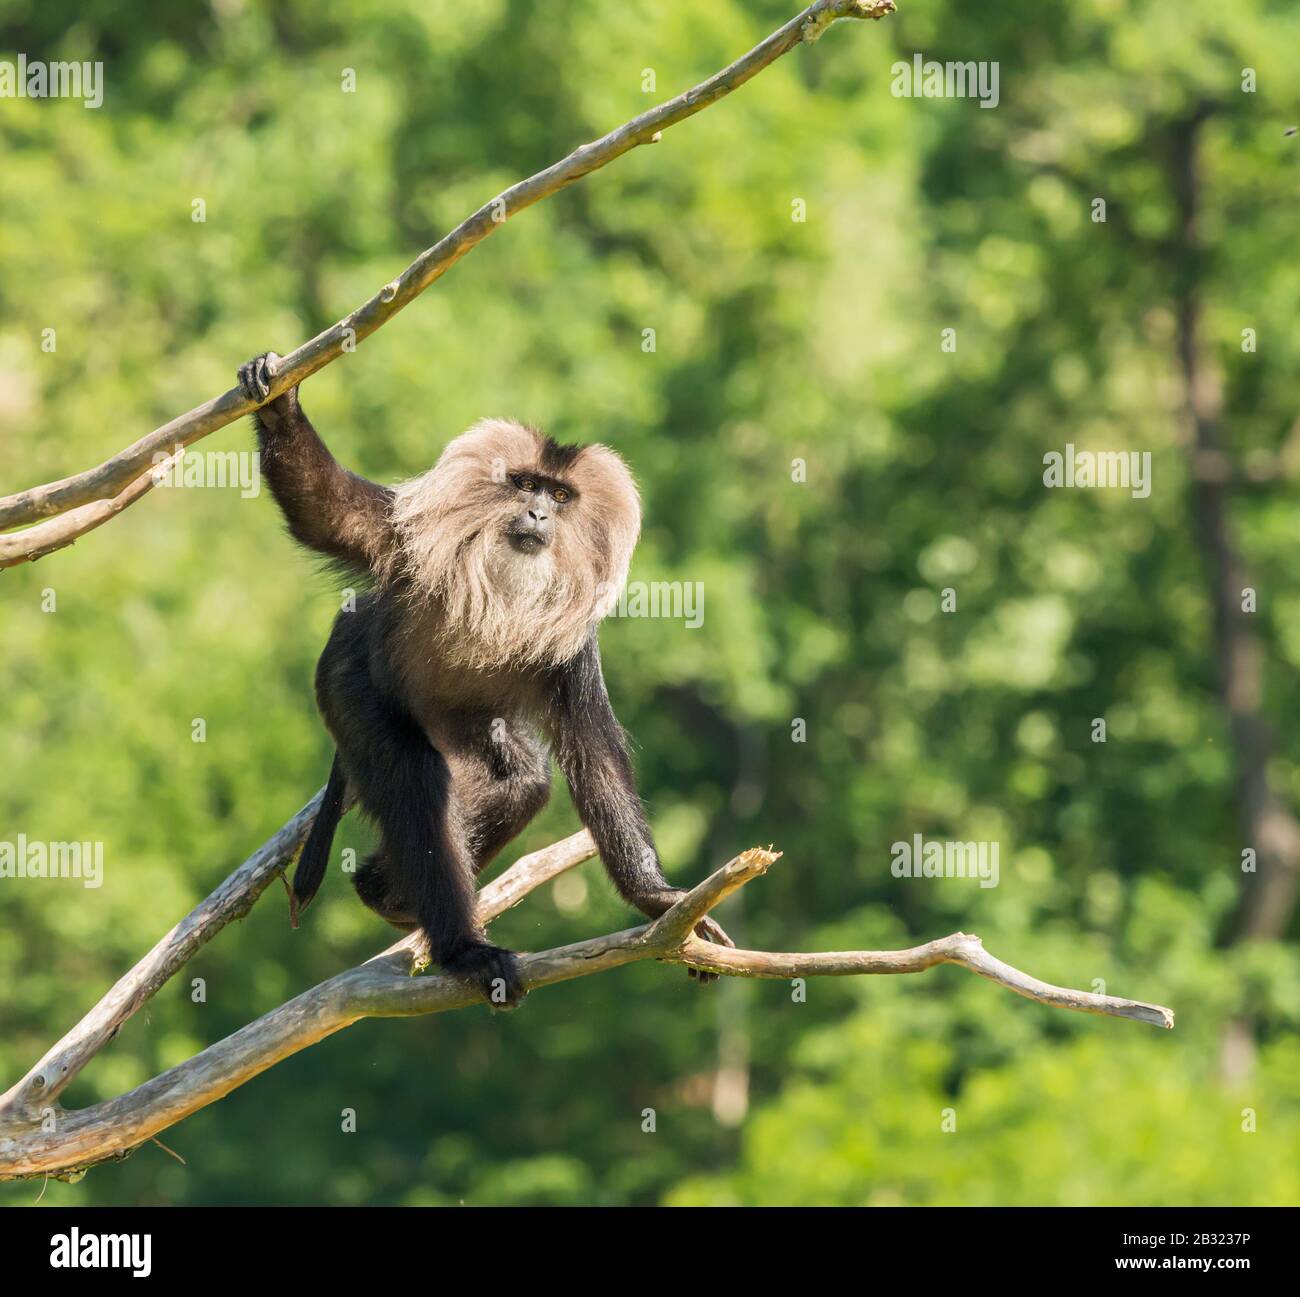 singe macaque à queue de lion marchant sur des branches mortes dans le zoo Banque D'Images